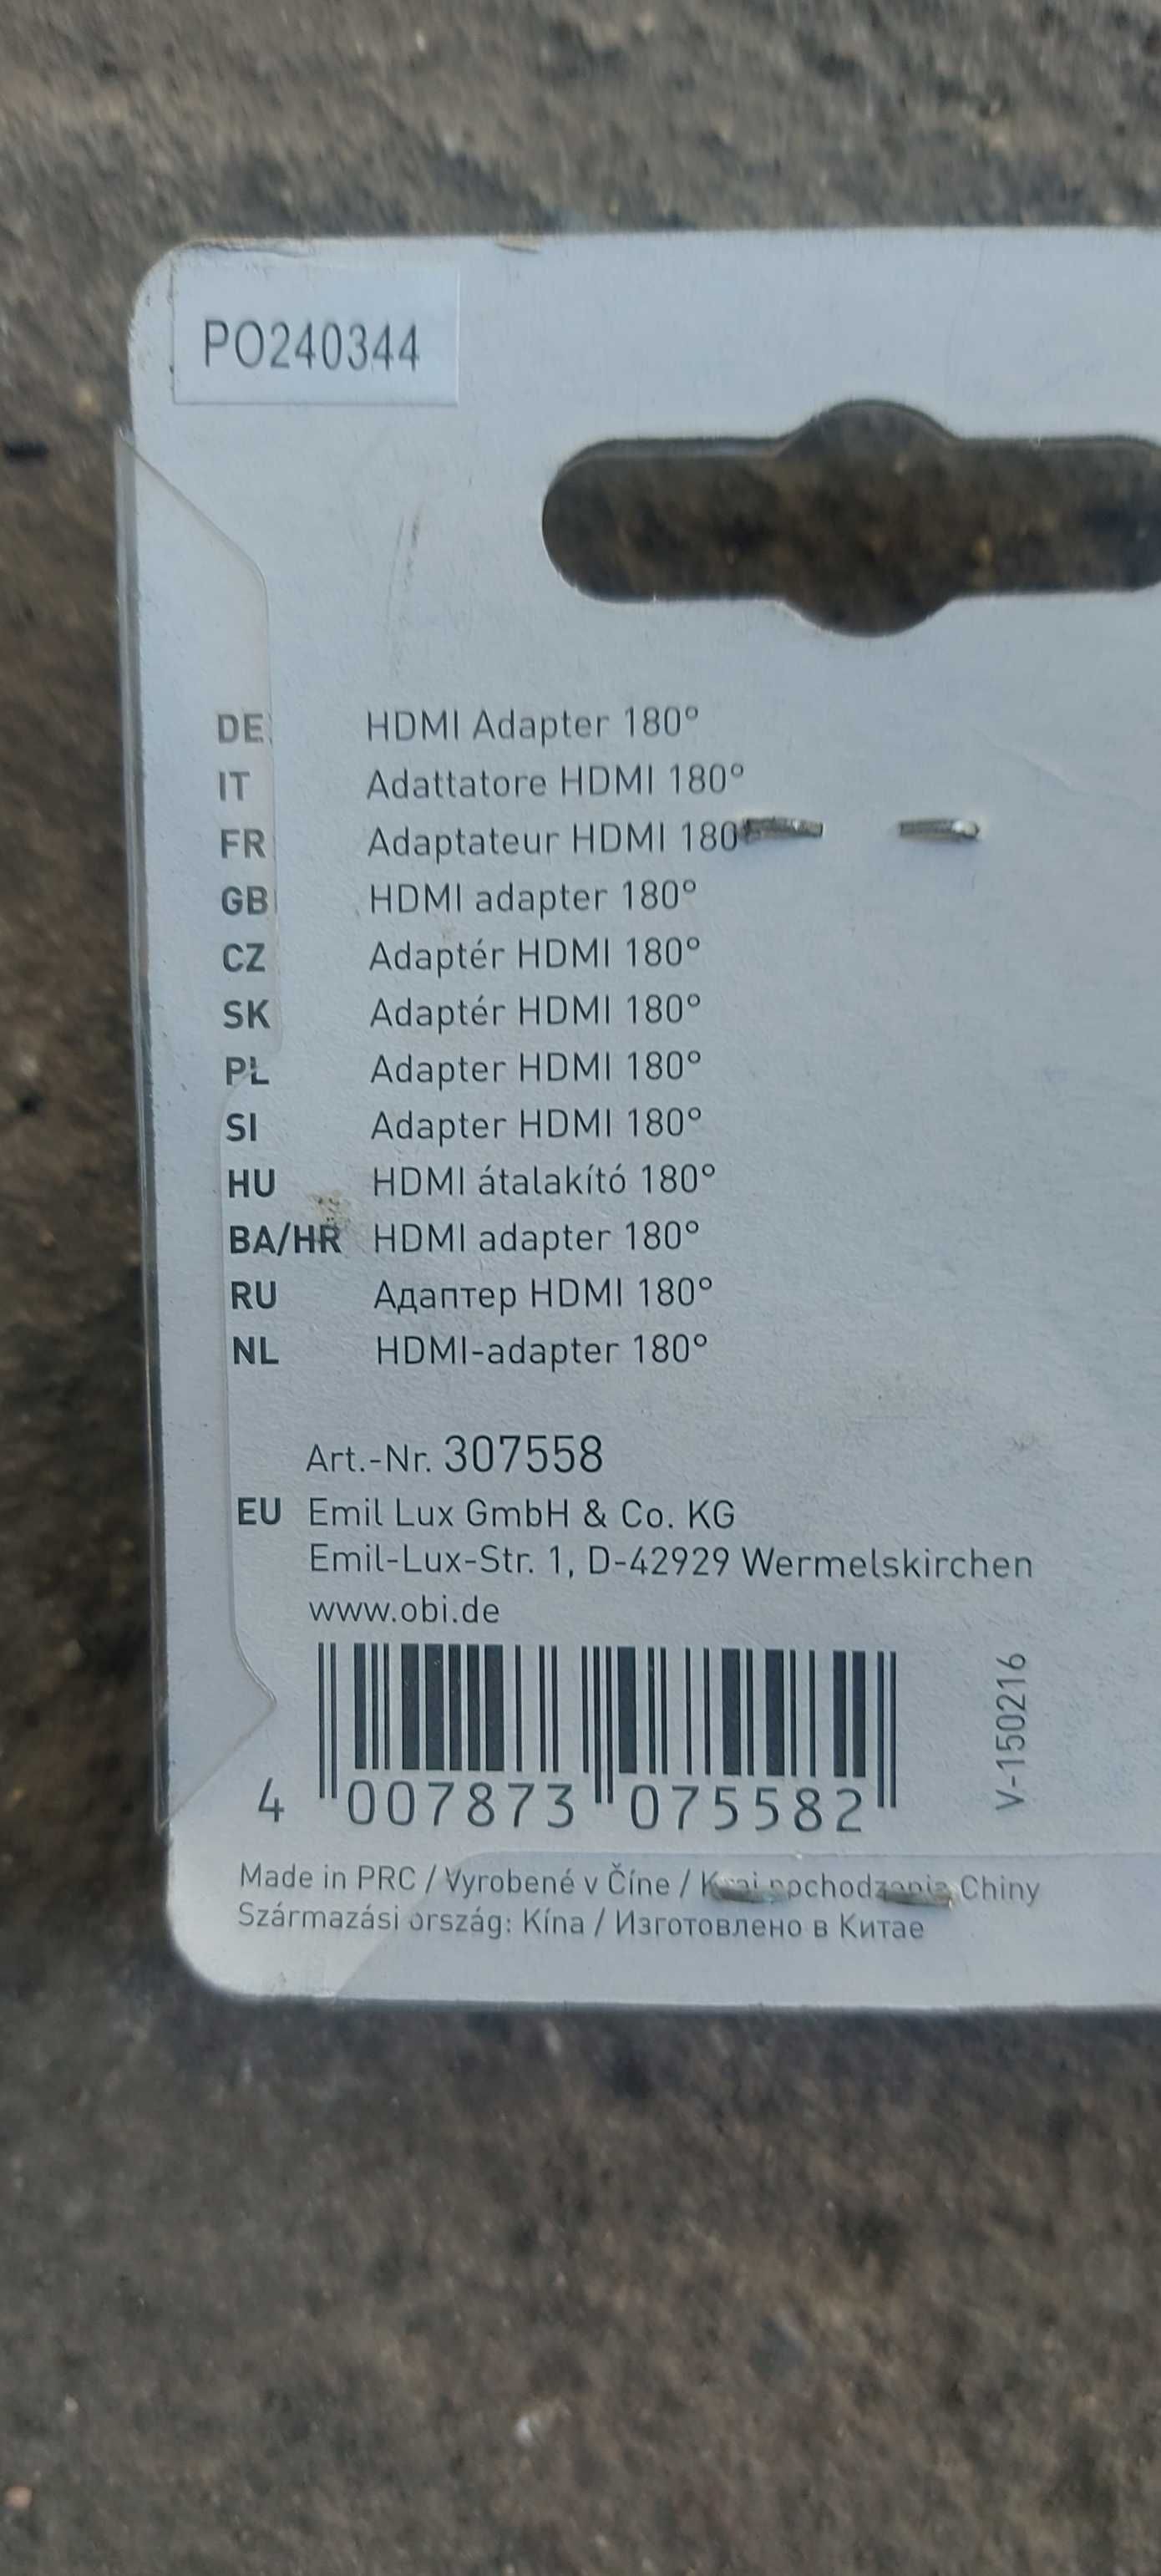 Ruchomy Adapter Kątowy HDMI 180 - 90 stopni Obi